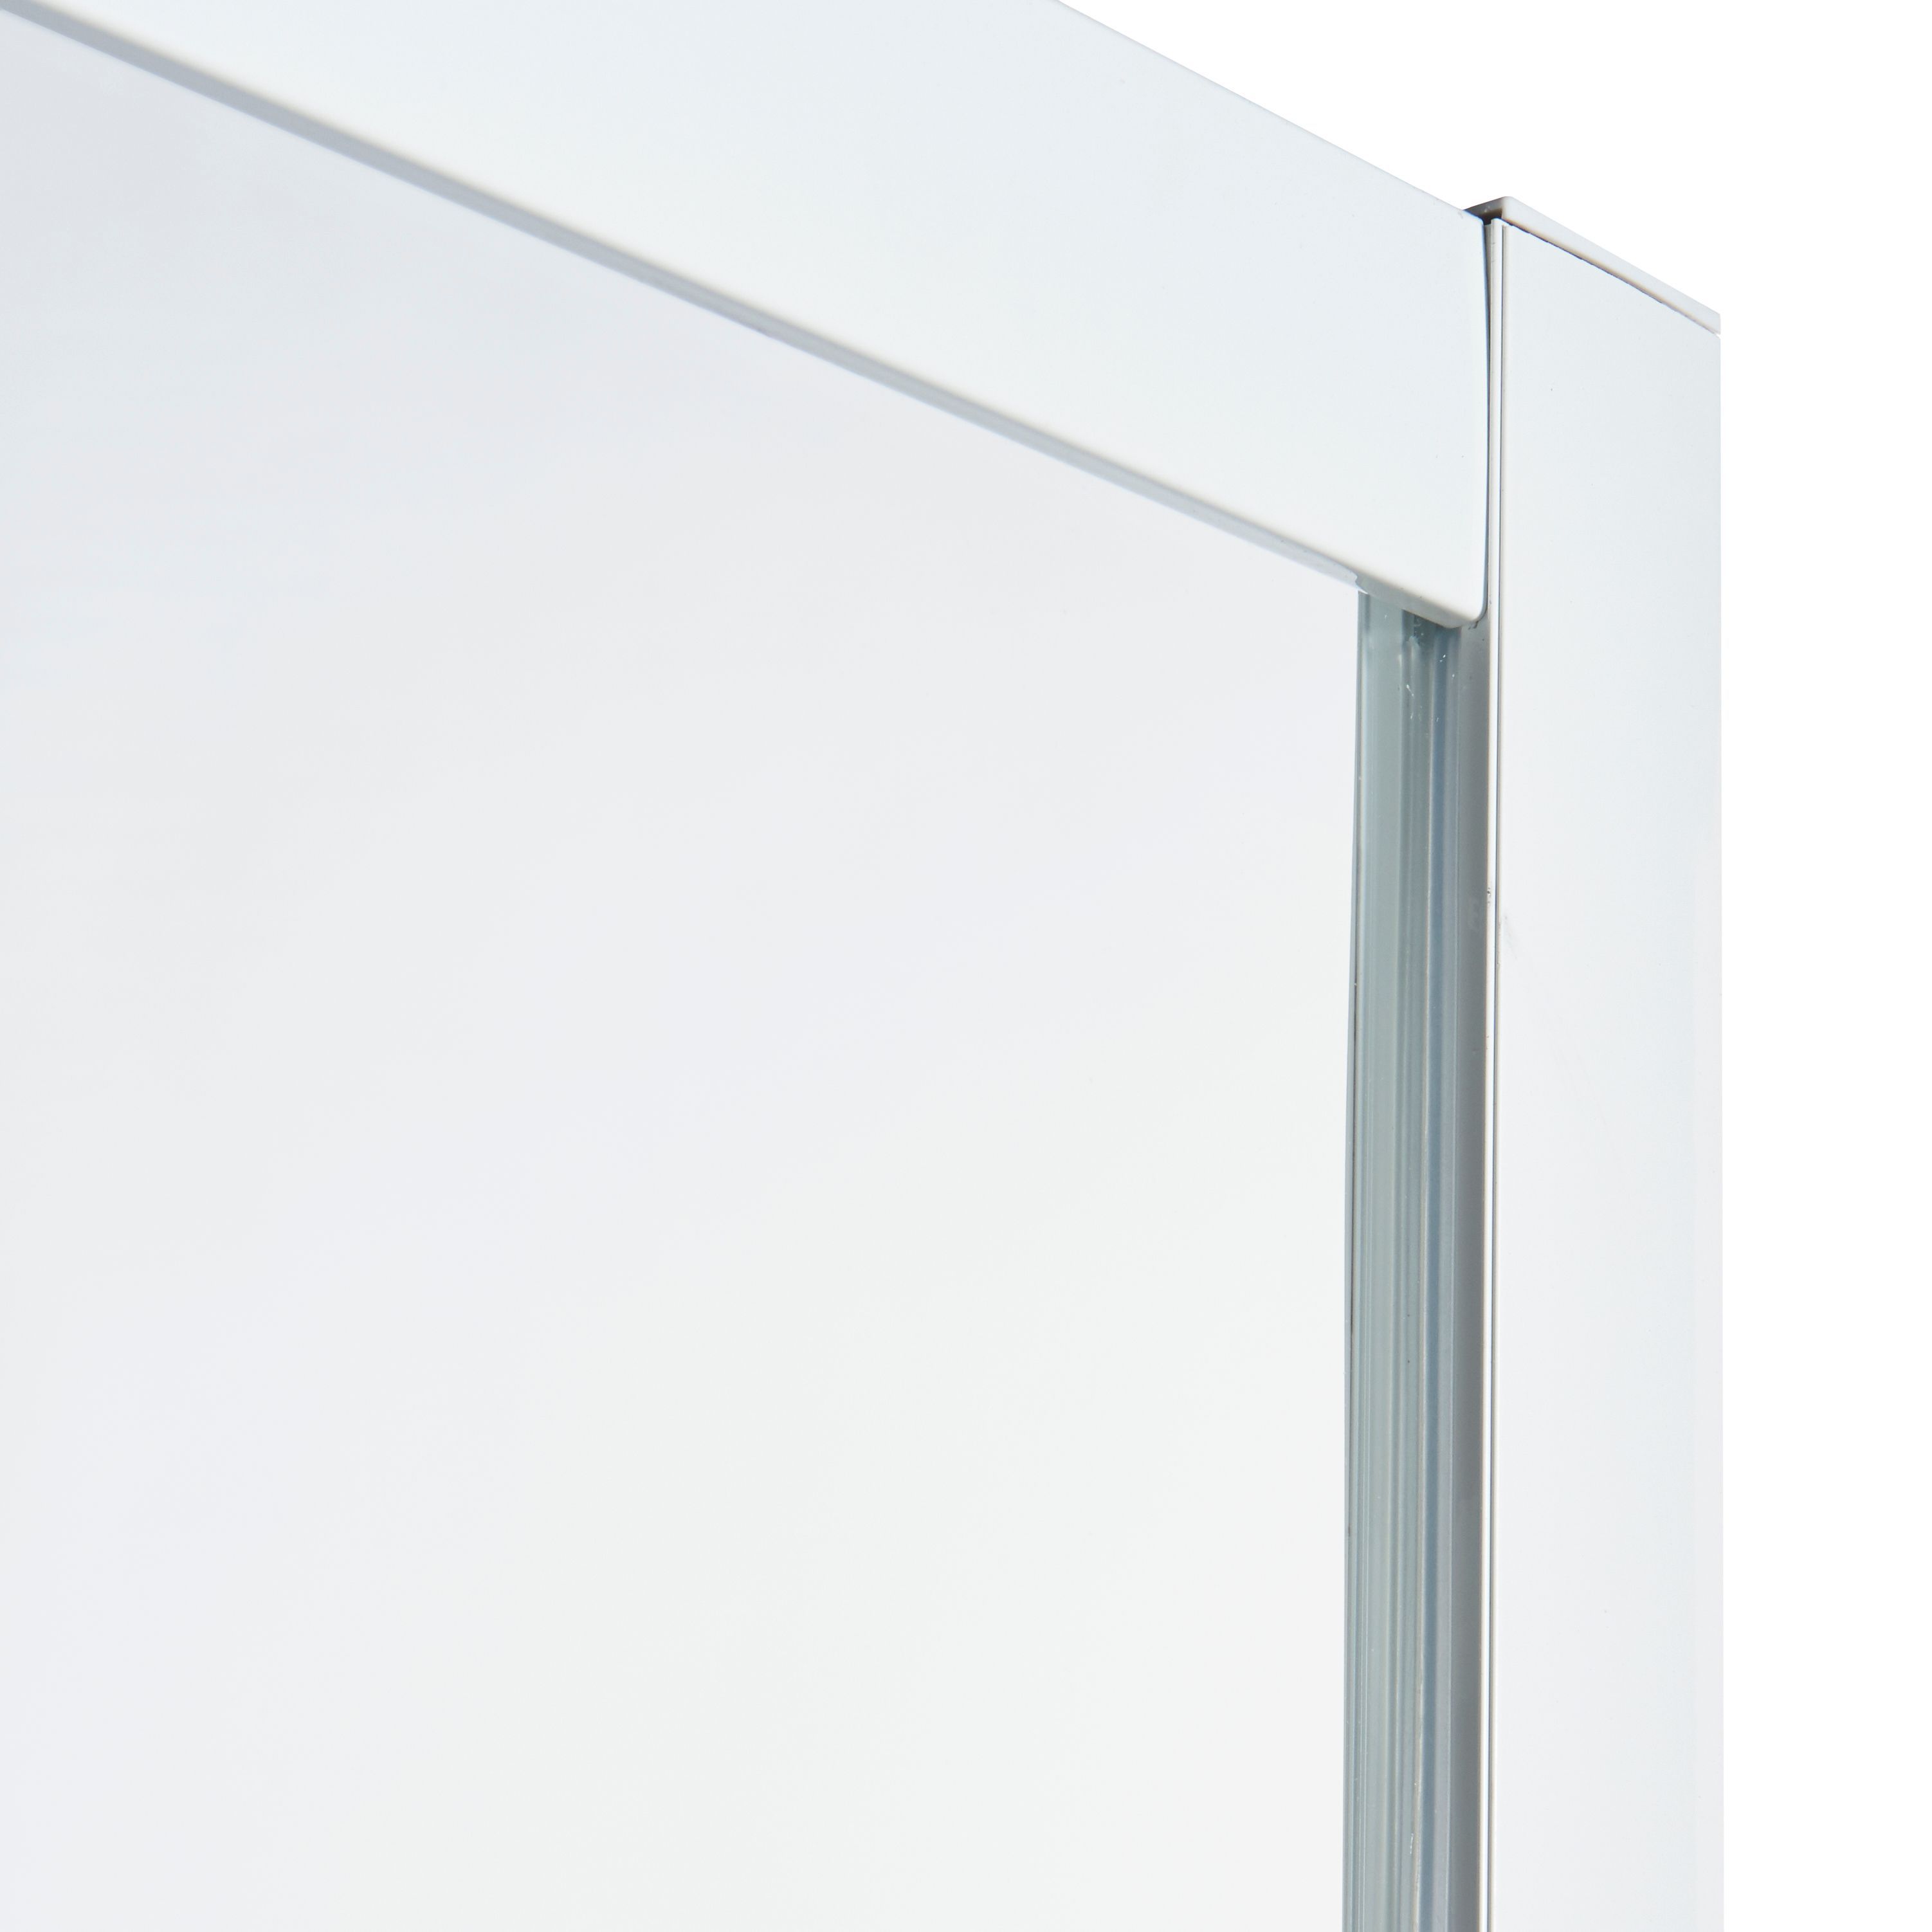 Cooke & Lewis Onega Framed Frosted Square Shower enclosure - Corner entry double sliding door (W)90cm (D)90cm